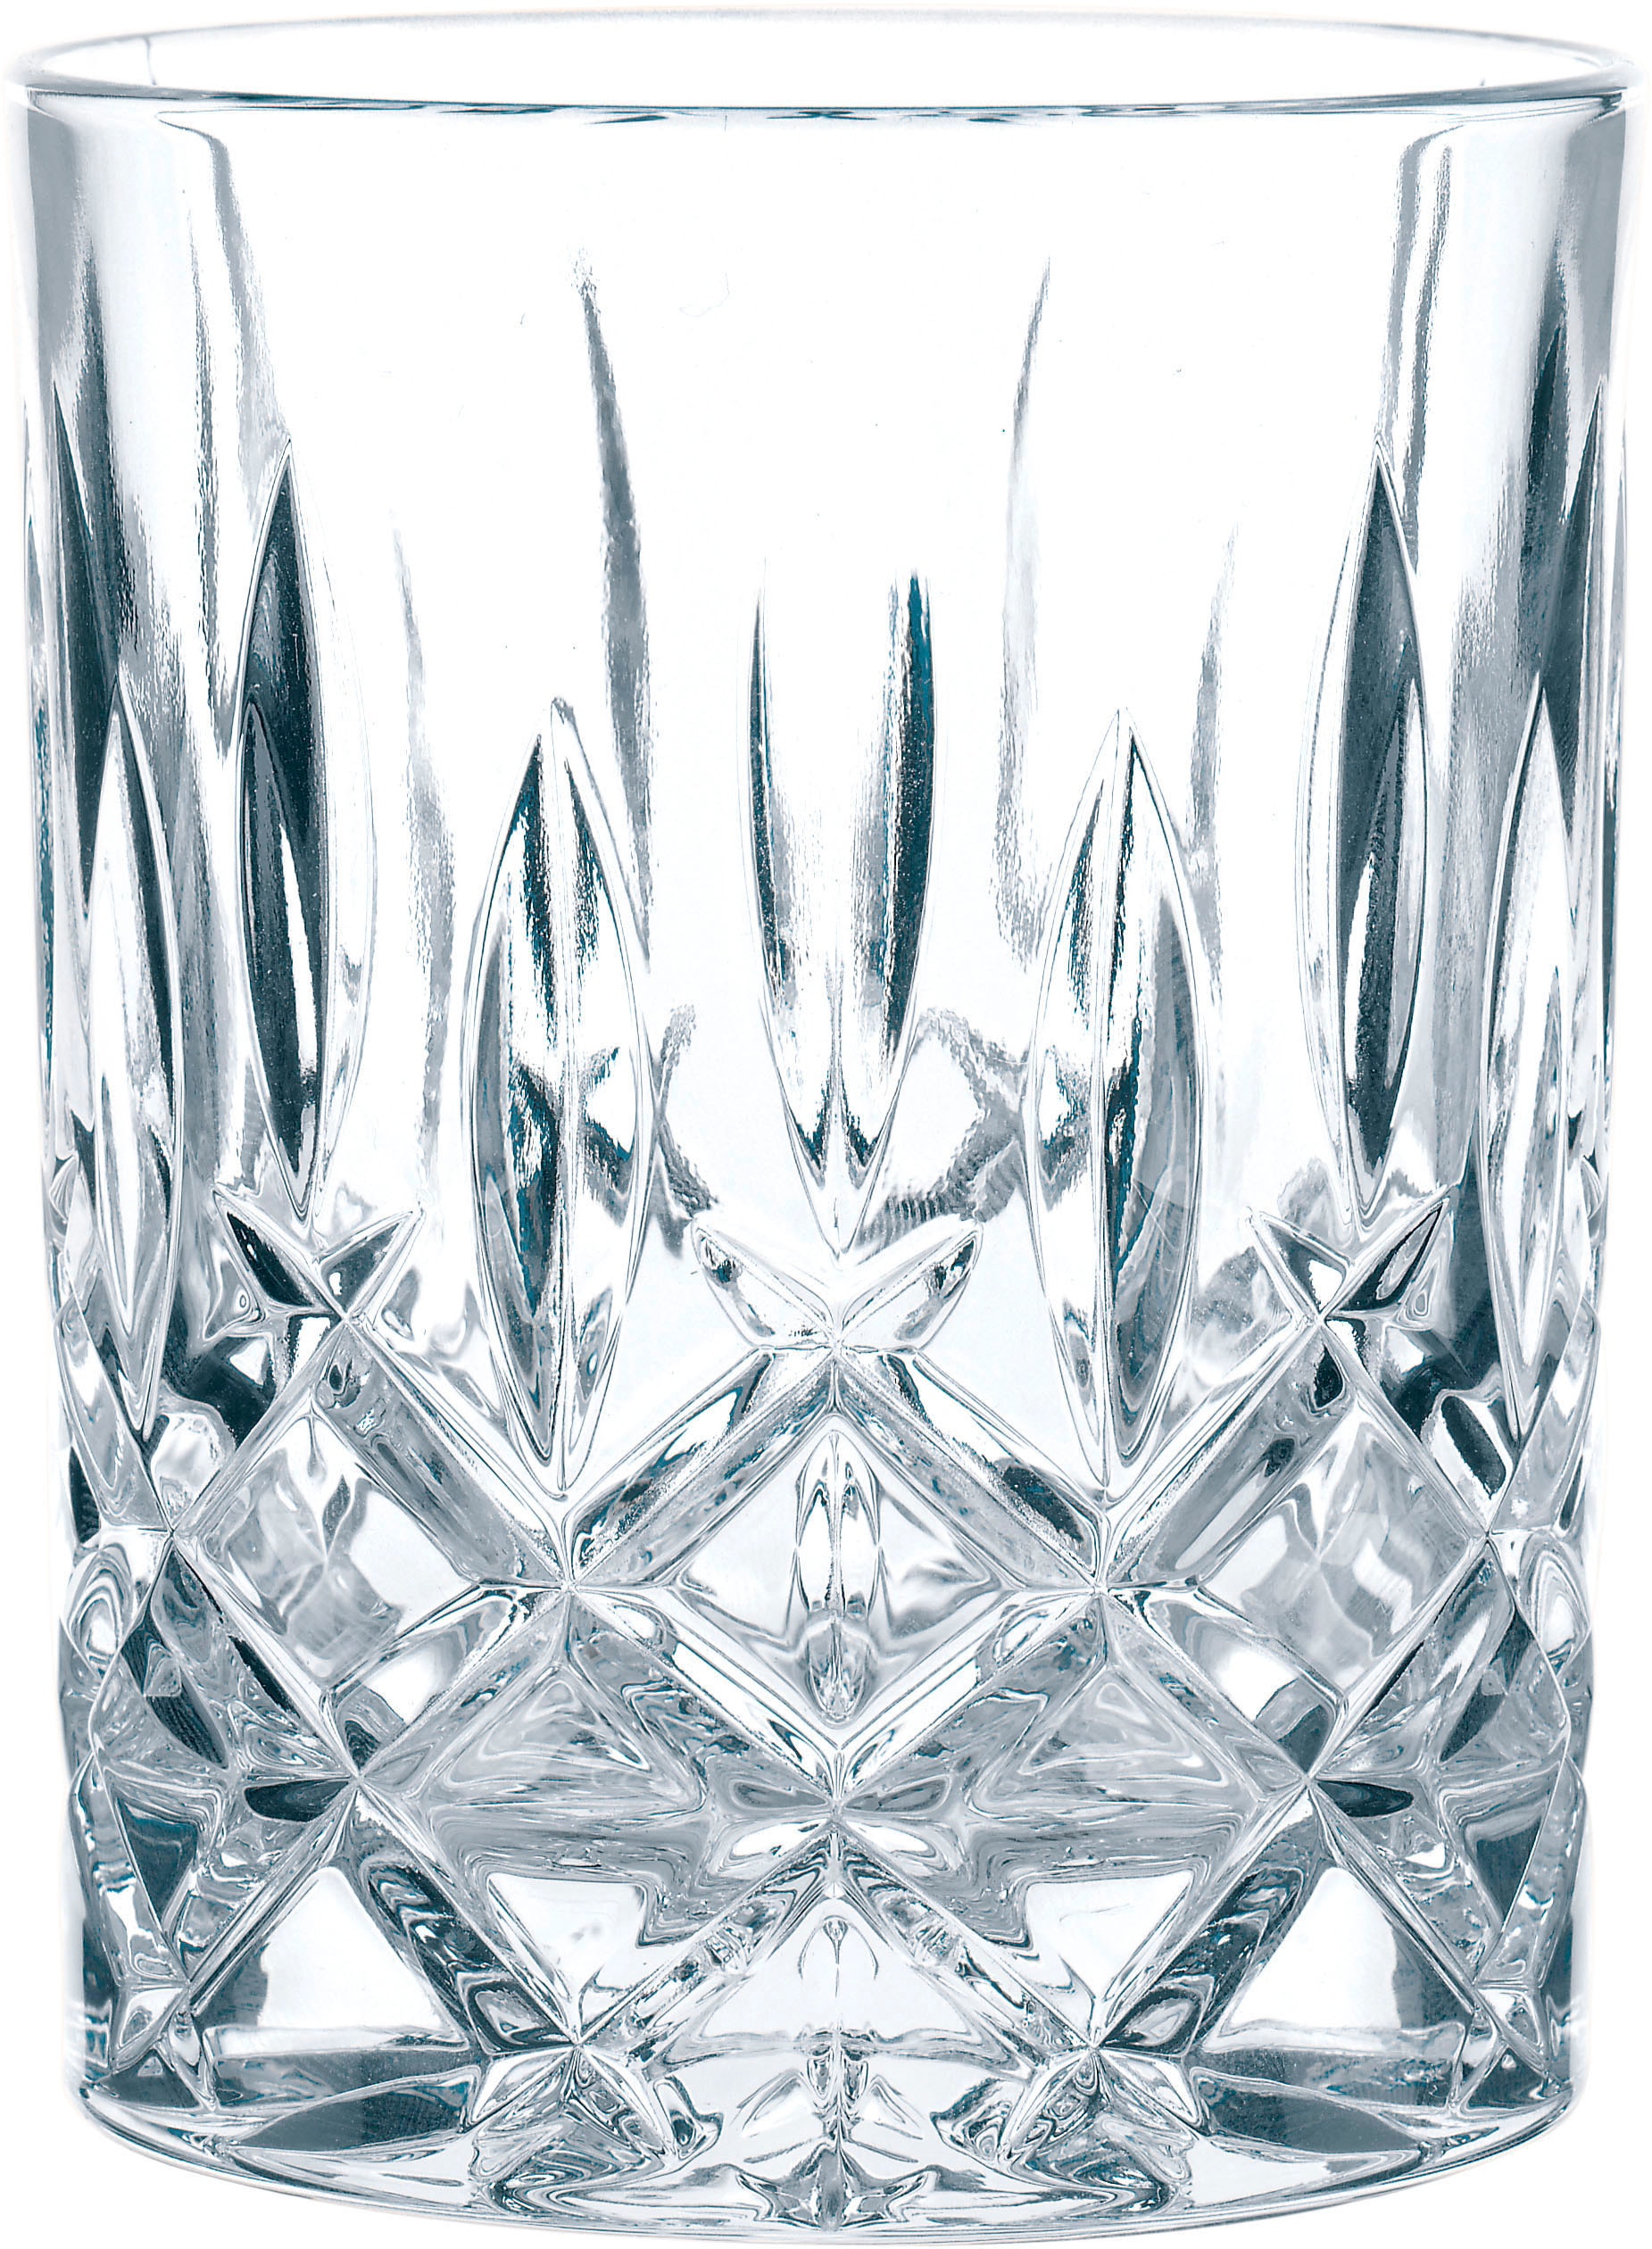 Nachtmann Gläser-Set »Noblesse«, (Set, 18 tlg., je 6 Whisky-Gläser,  Longdrinkgläser und Softdrink/Wasser-Gläser), Made in Germany, 18-teilig  kaufen bei OTTO